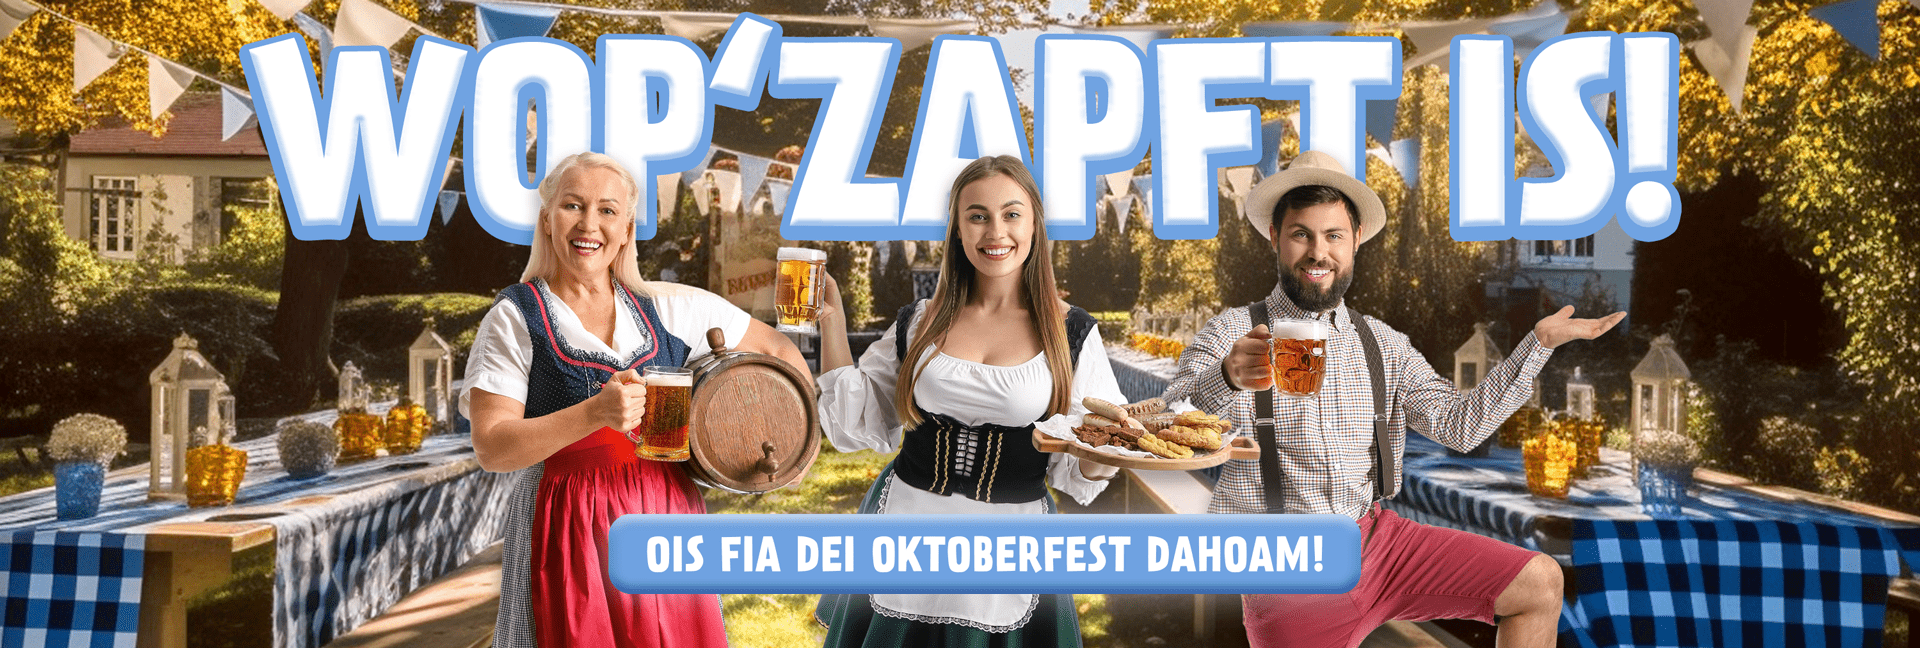 Oktoberfest-Gaudi daheim - so verwandelst Du Dein Zuhause in ein bayrisches Festzelt